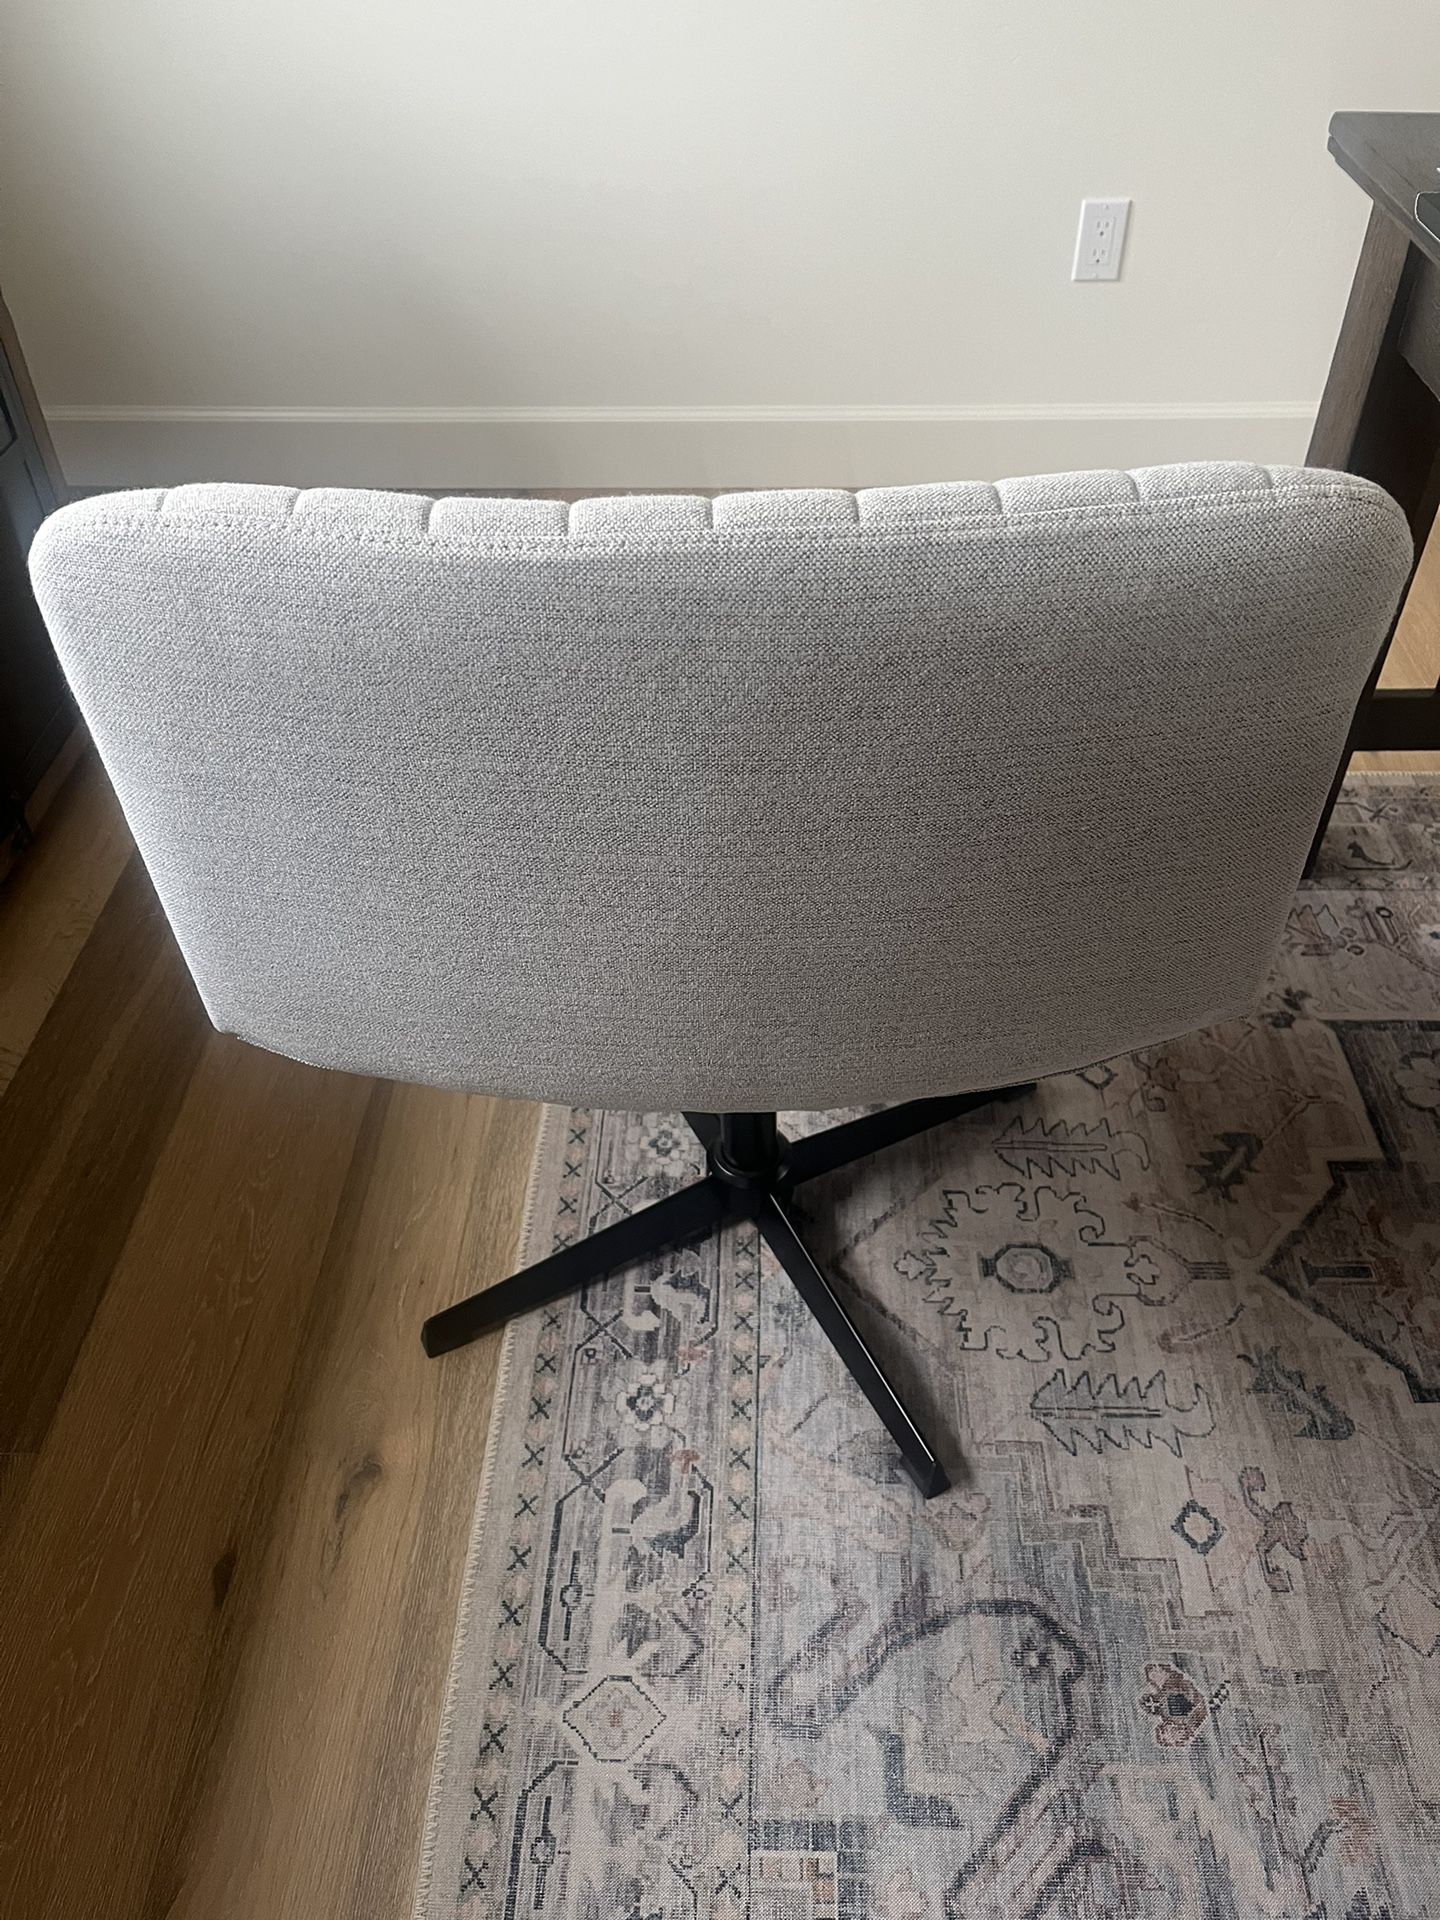 Super Comfy Upholstered Desk Chair